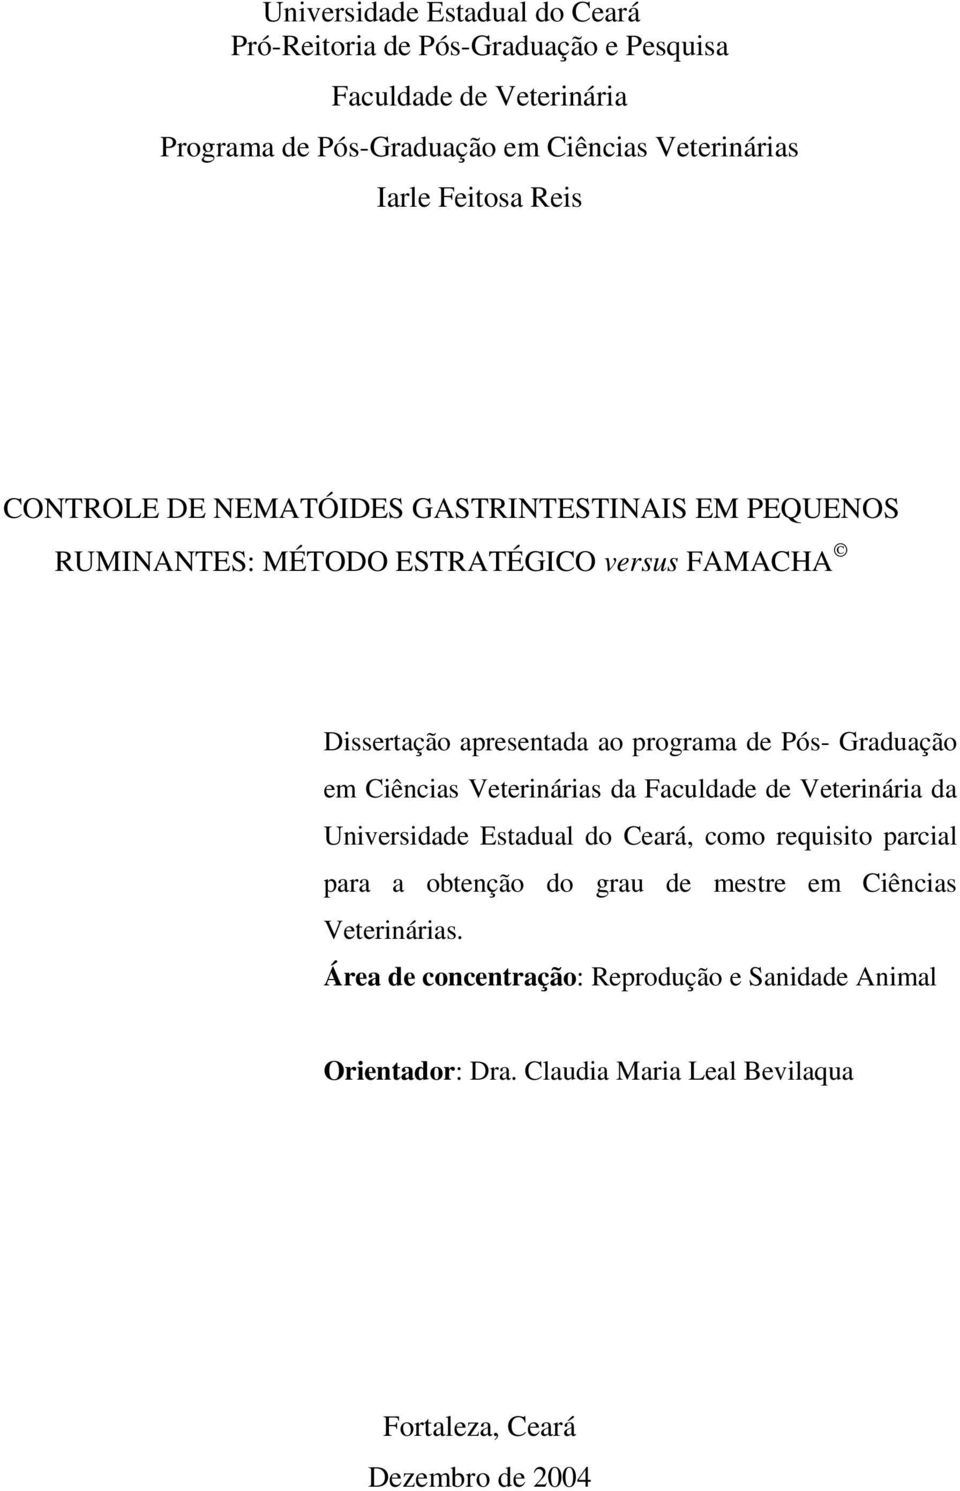 Graduação em Ciências Veterinárias da Faculdade de Veterinária da Universidade Estadual do Ceará, como requisito parcial para a obtenção do grau de mestre